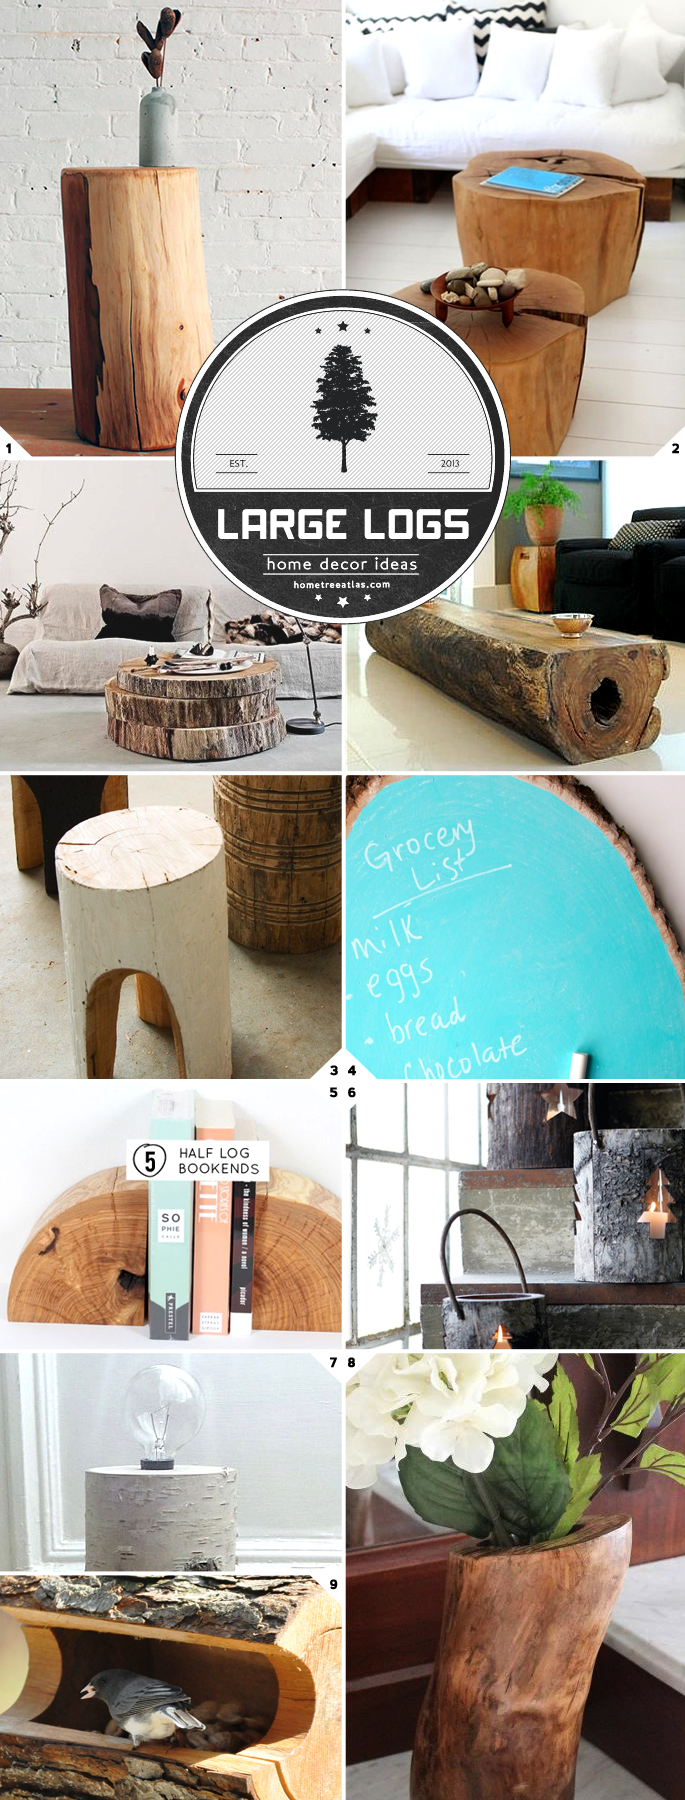 DIY Log Home Decor Ideas